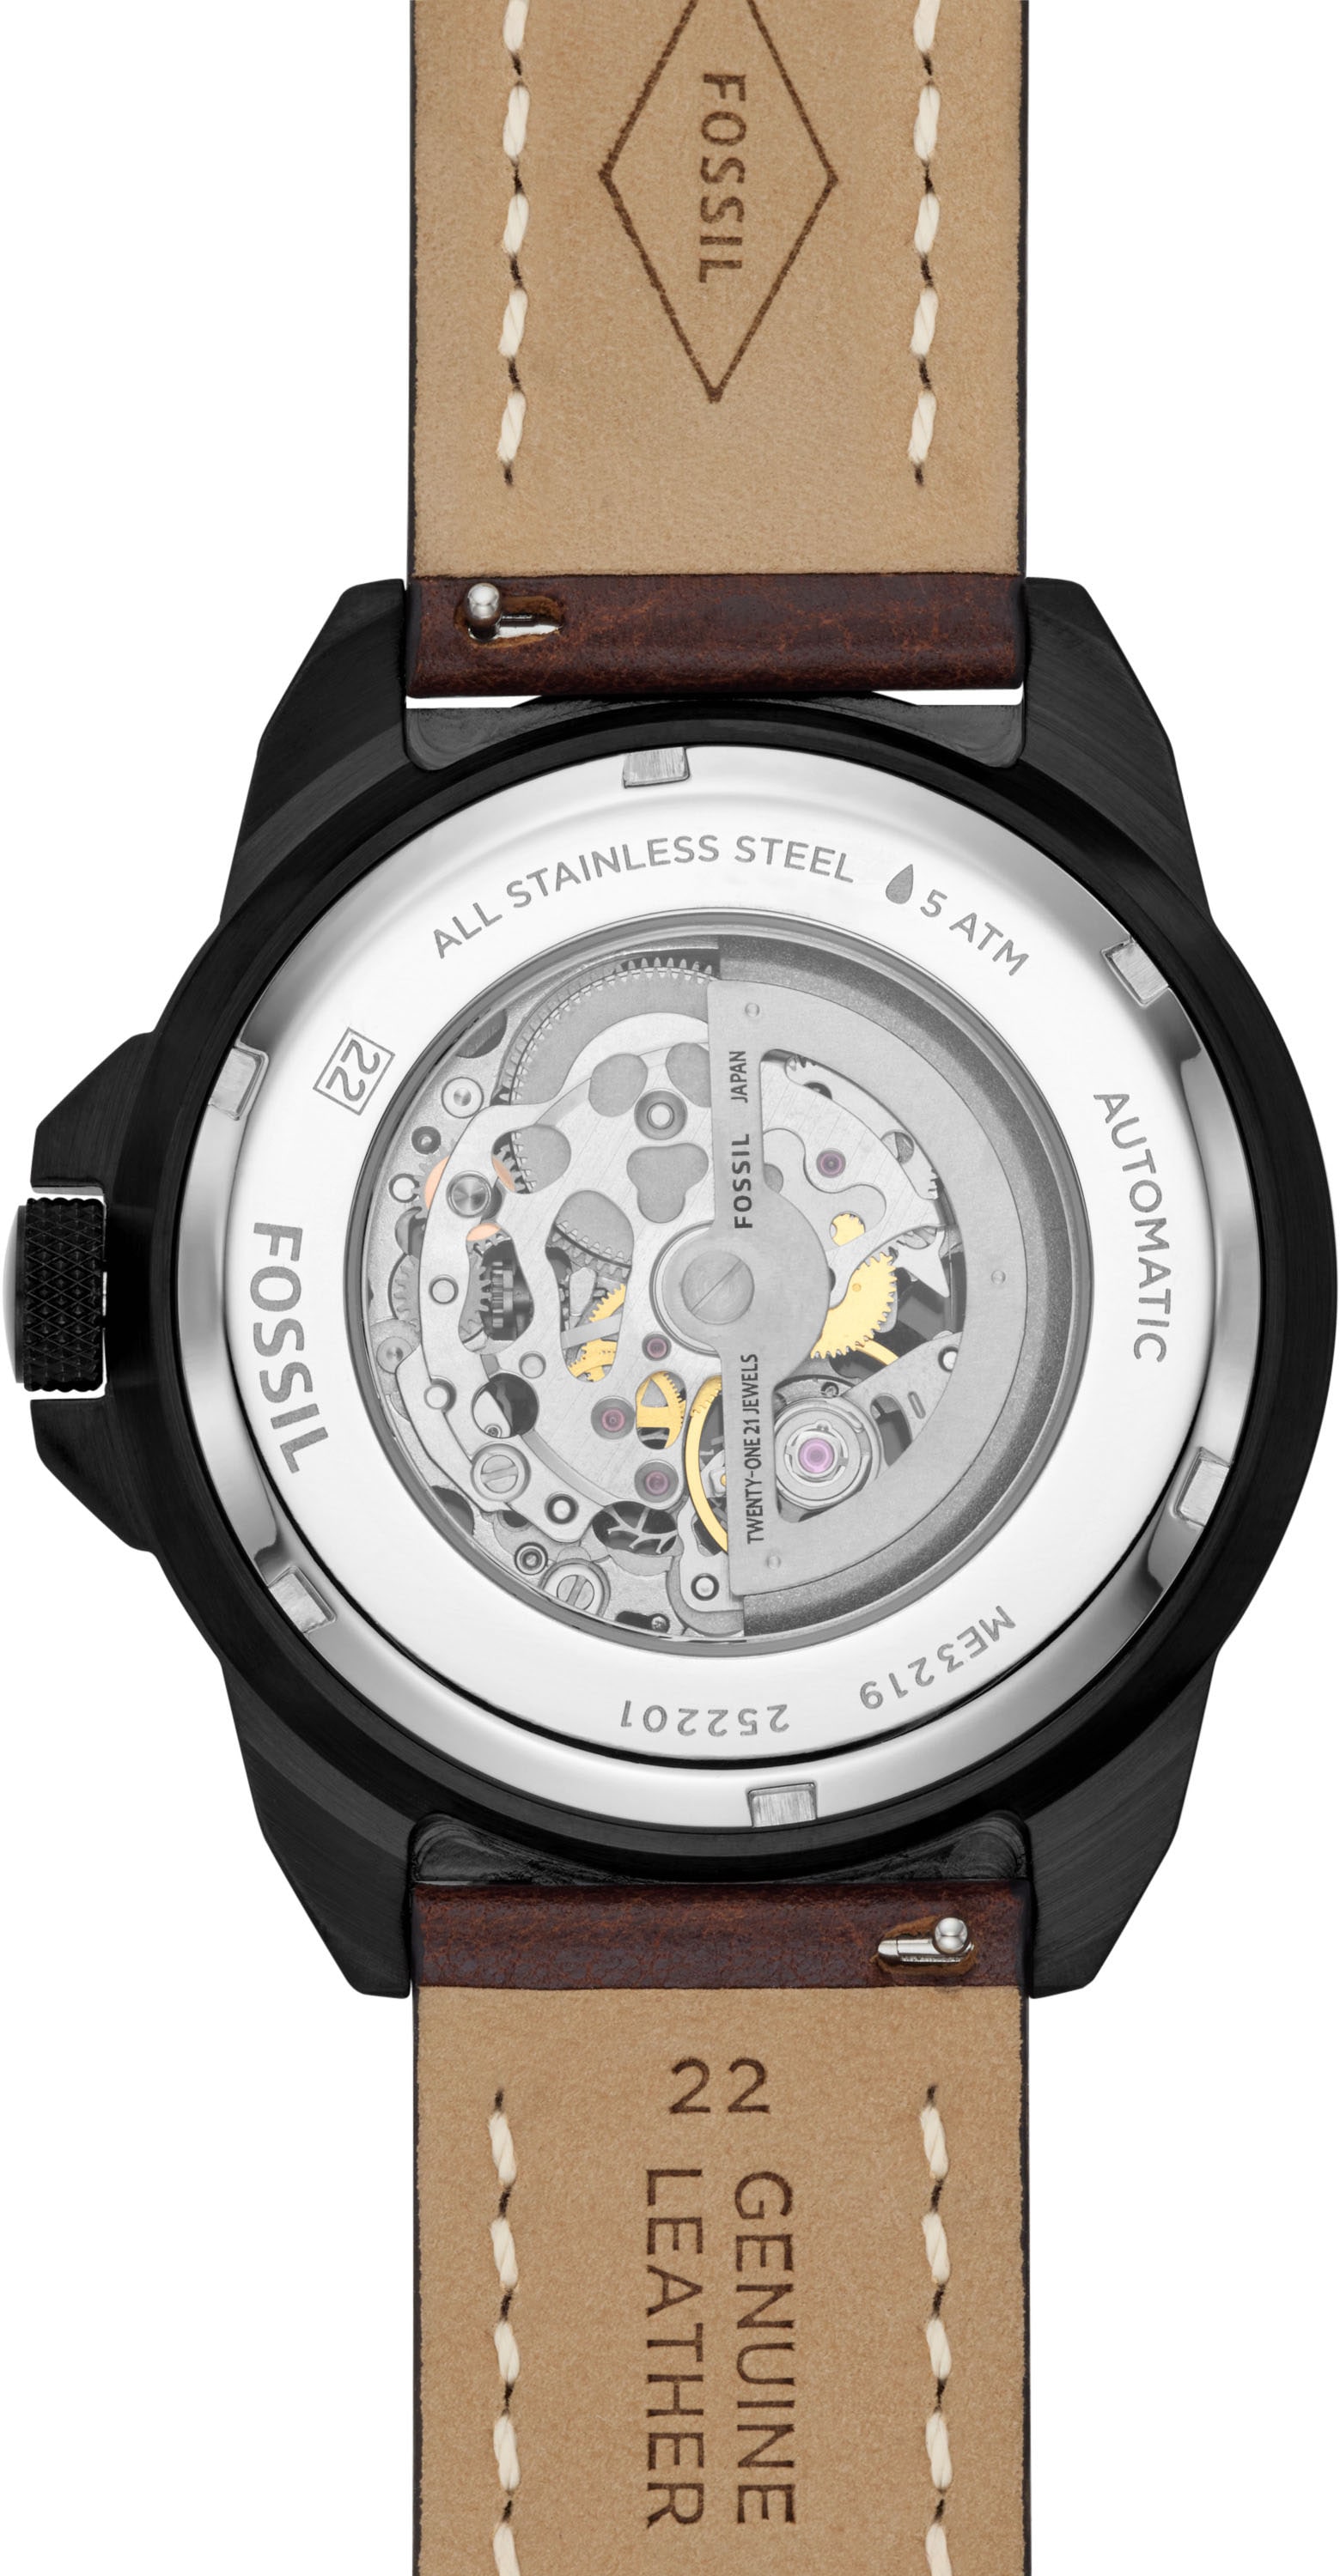 Fossil Automatikuhr »BRONSON, ME3219«, Armbanduhr, Herrenuhr, mechanische Uhr, Nachhaltigkeitssiegel